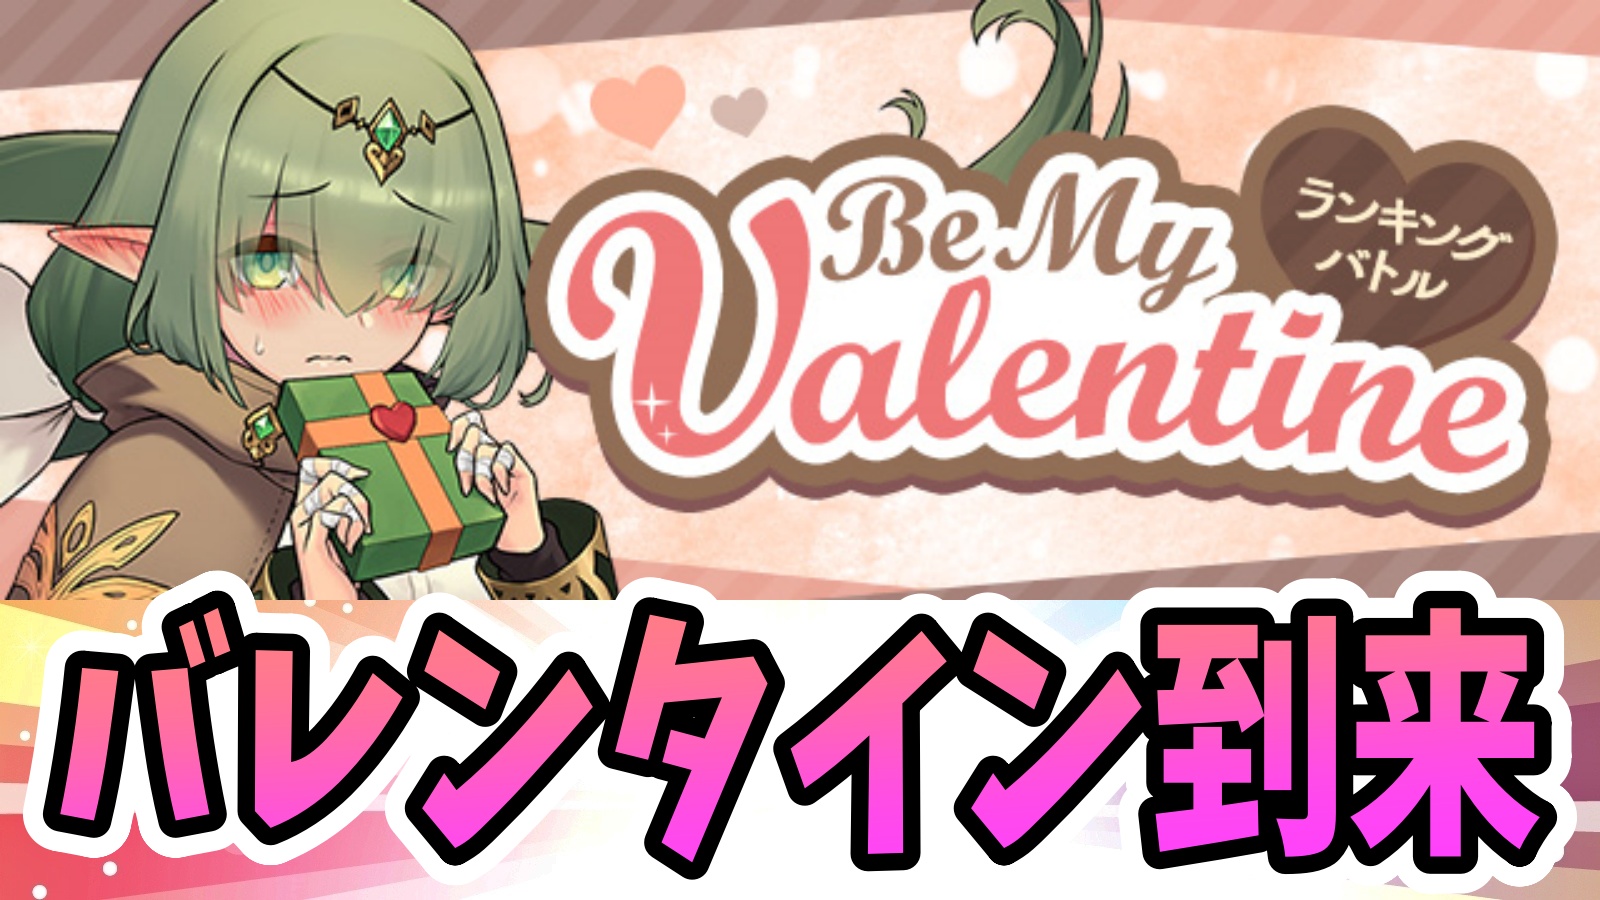 【パズドラ】バレンタインの特別な称号をゲットしよう! ランキングバトル「Be My Valentine」開催!【パズバト】